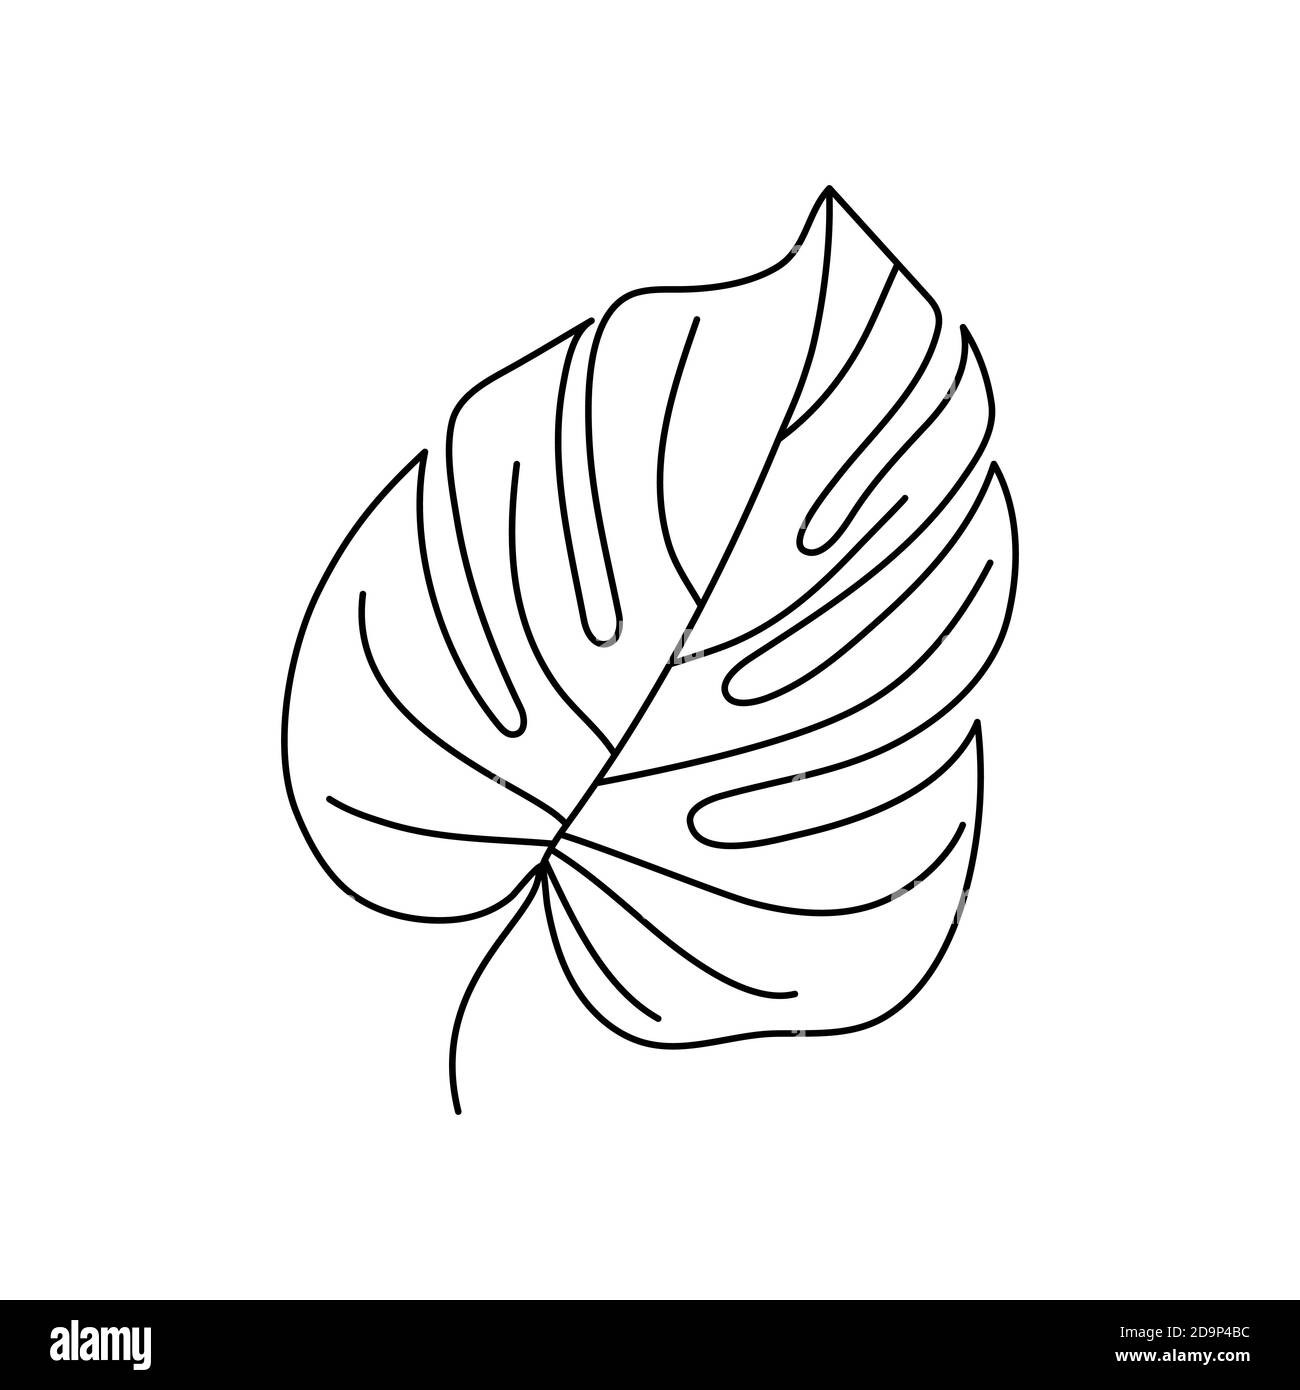 Set of Coconut Palm leaf drawing botanical  Stock Illustration  64424527  PIXTA